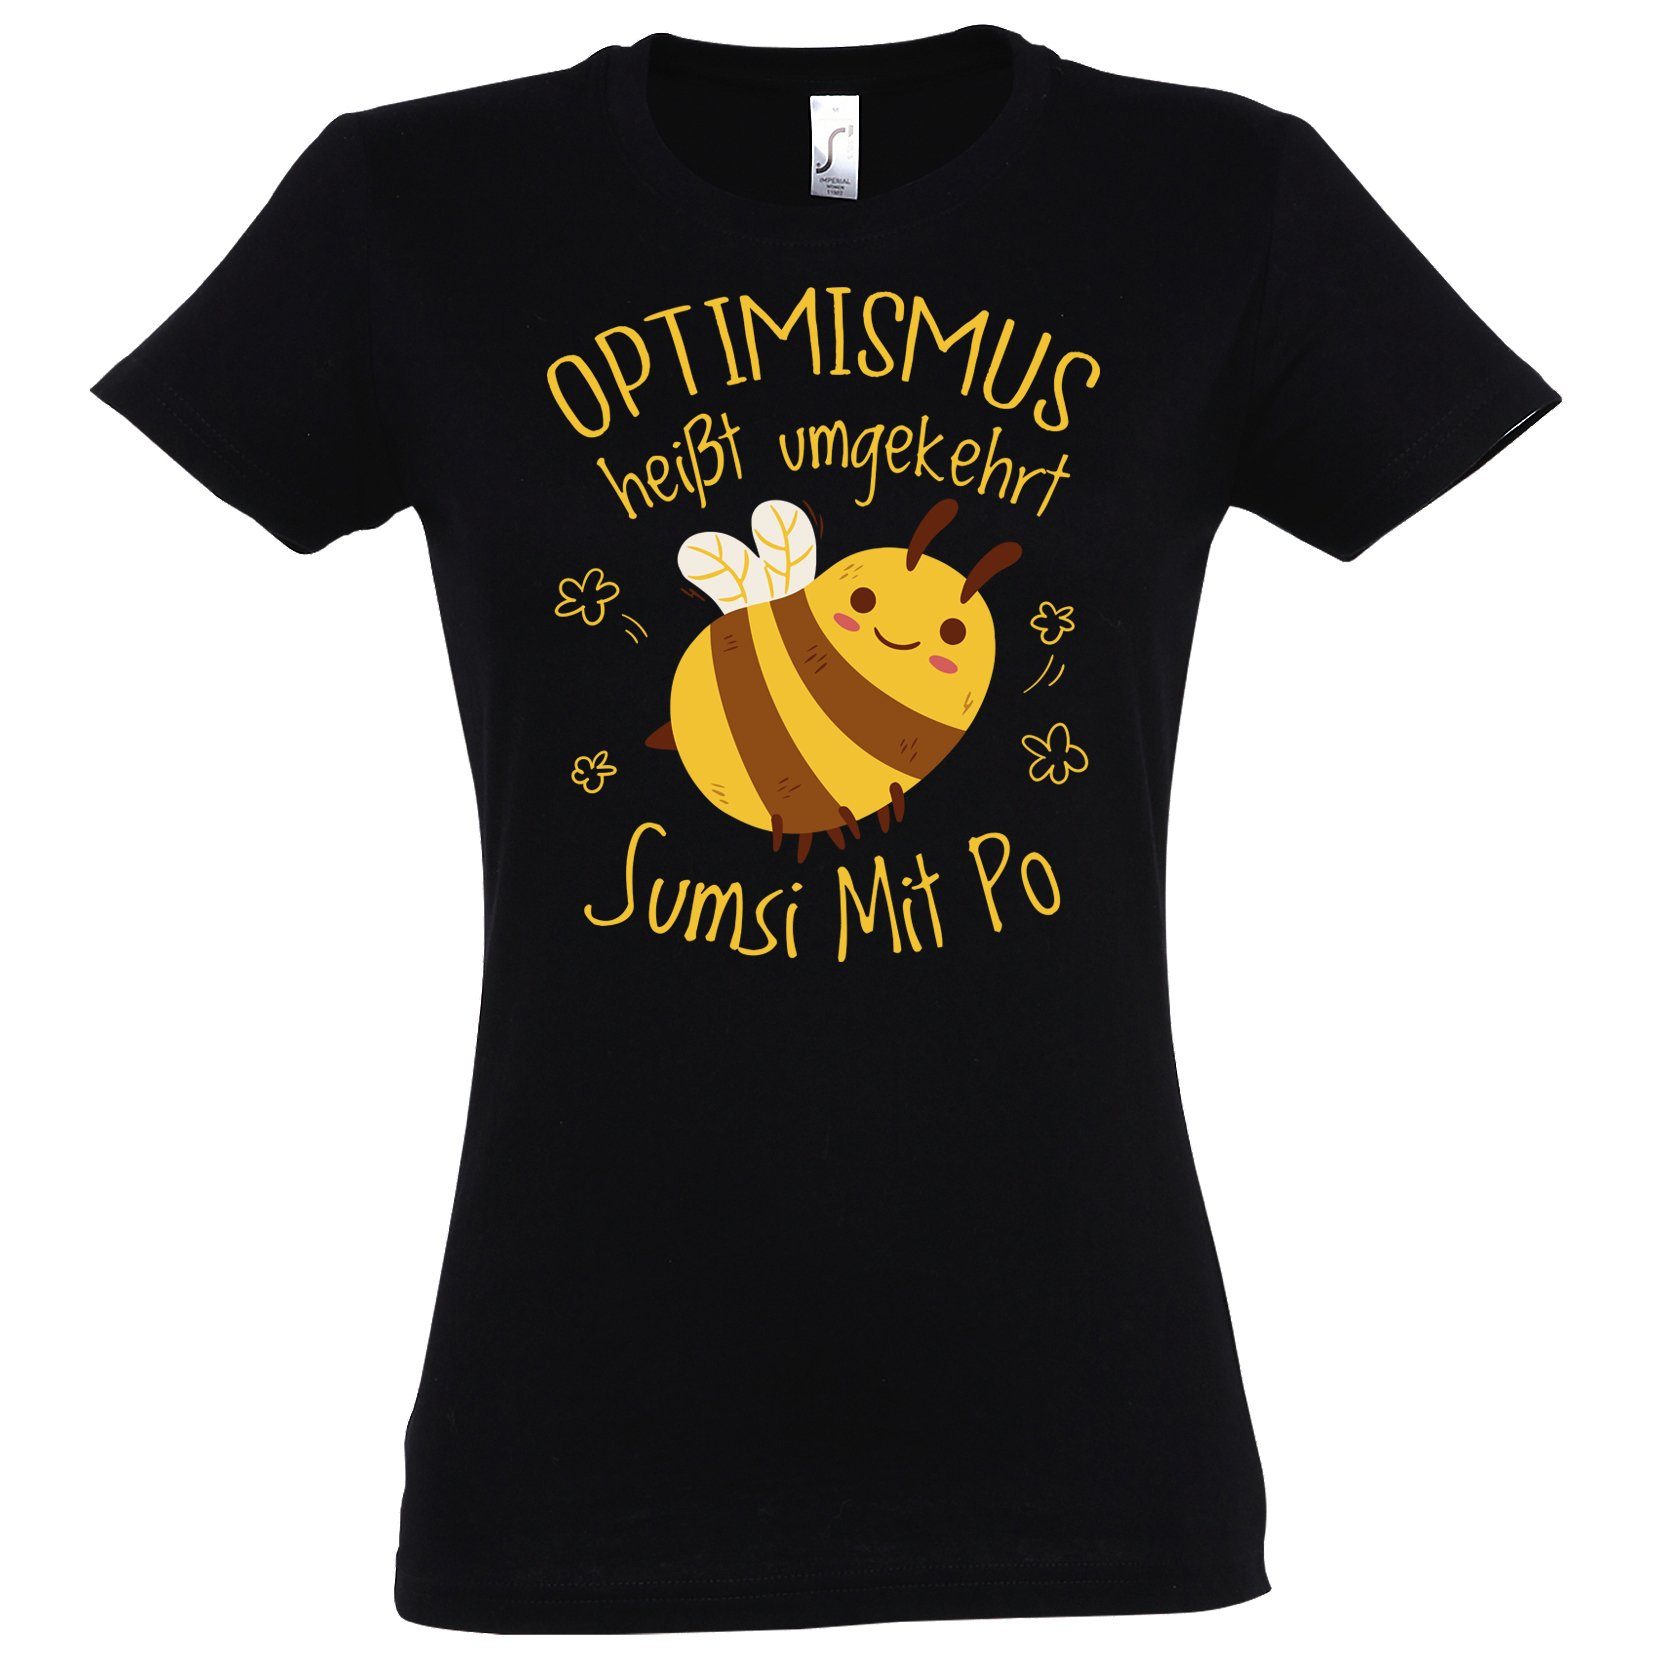 Damen Print Mit Shirt umgekehrt T-Shirt Schwarz Youth Sumsi Designz Mit Po modischem heißt Optimismus